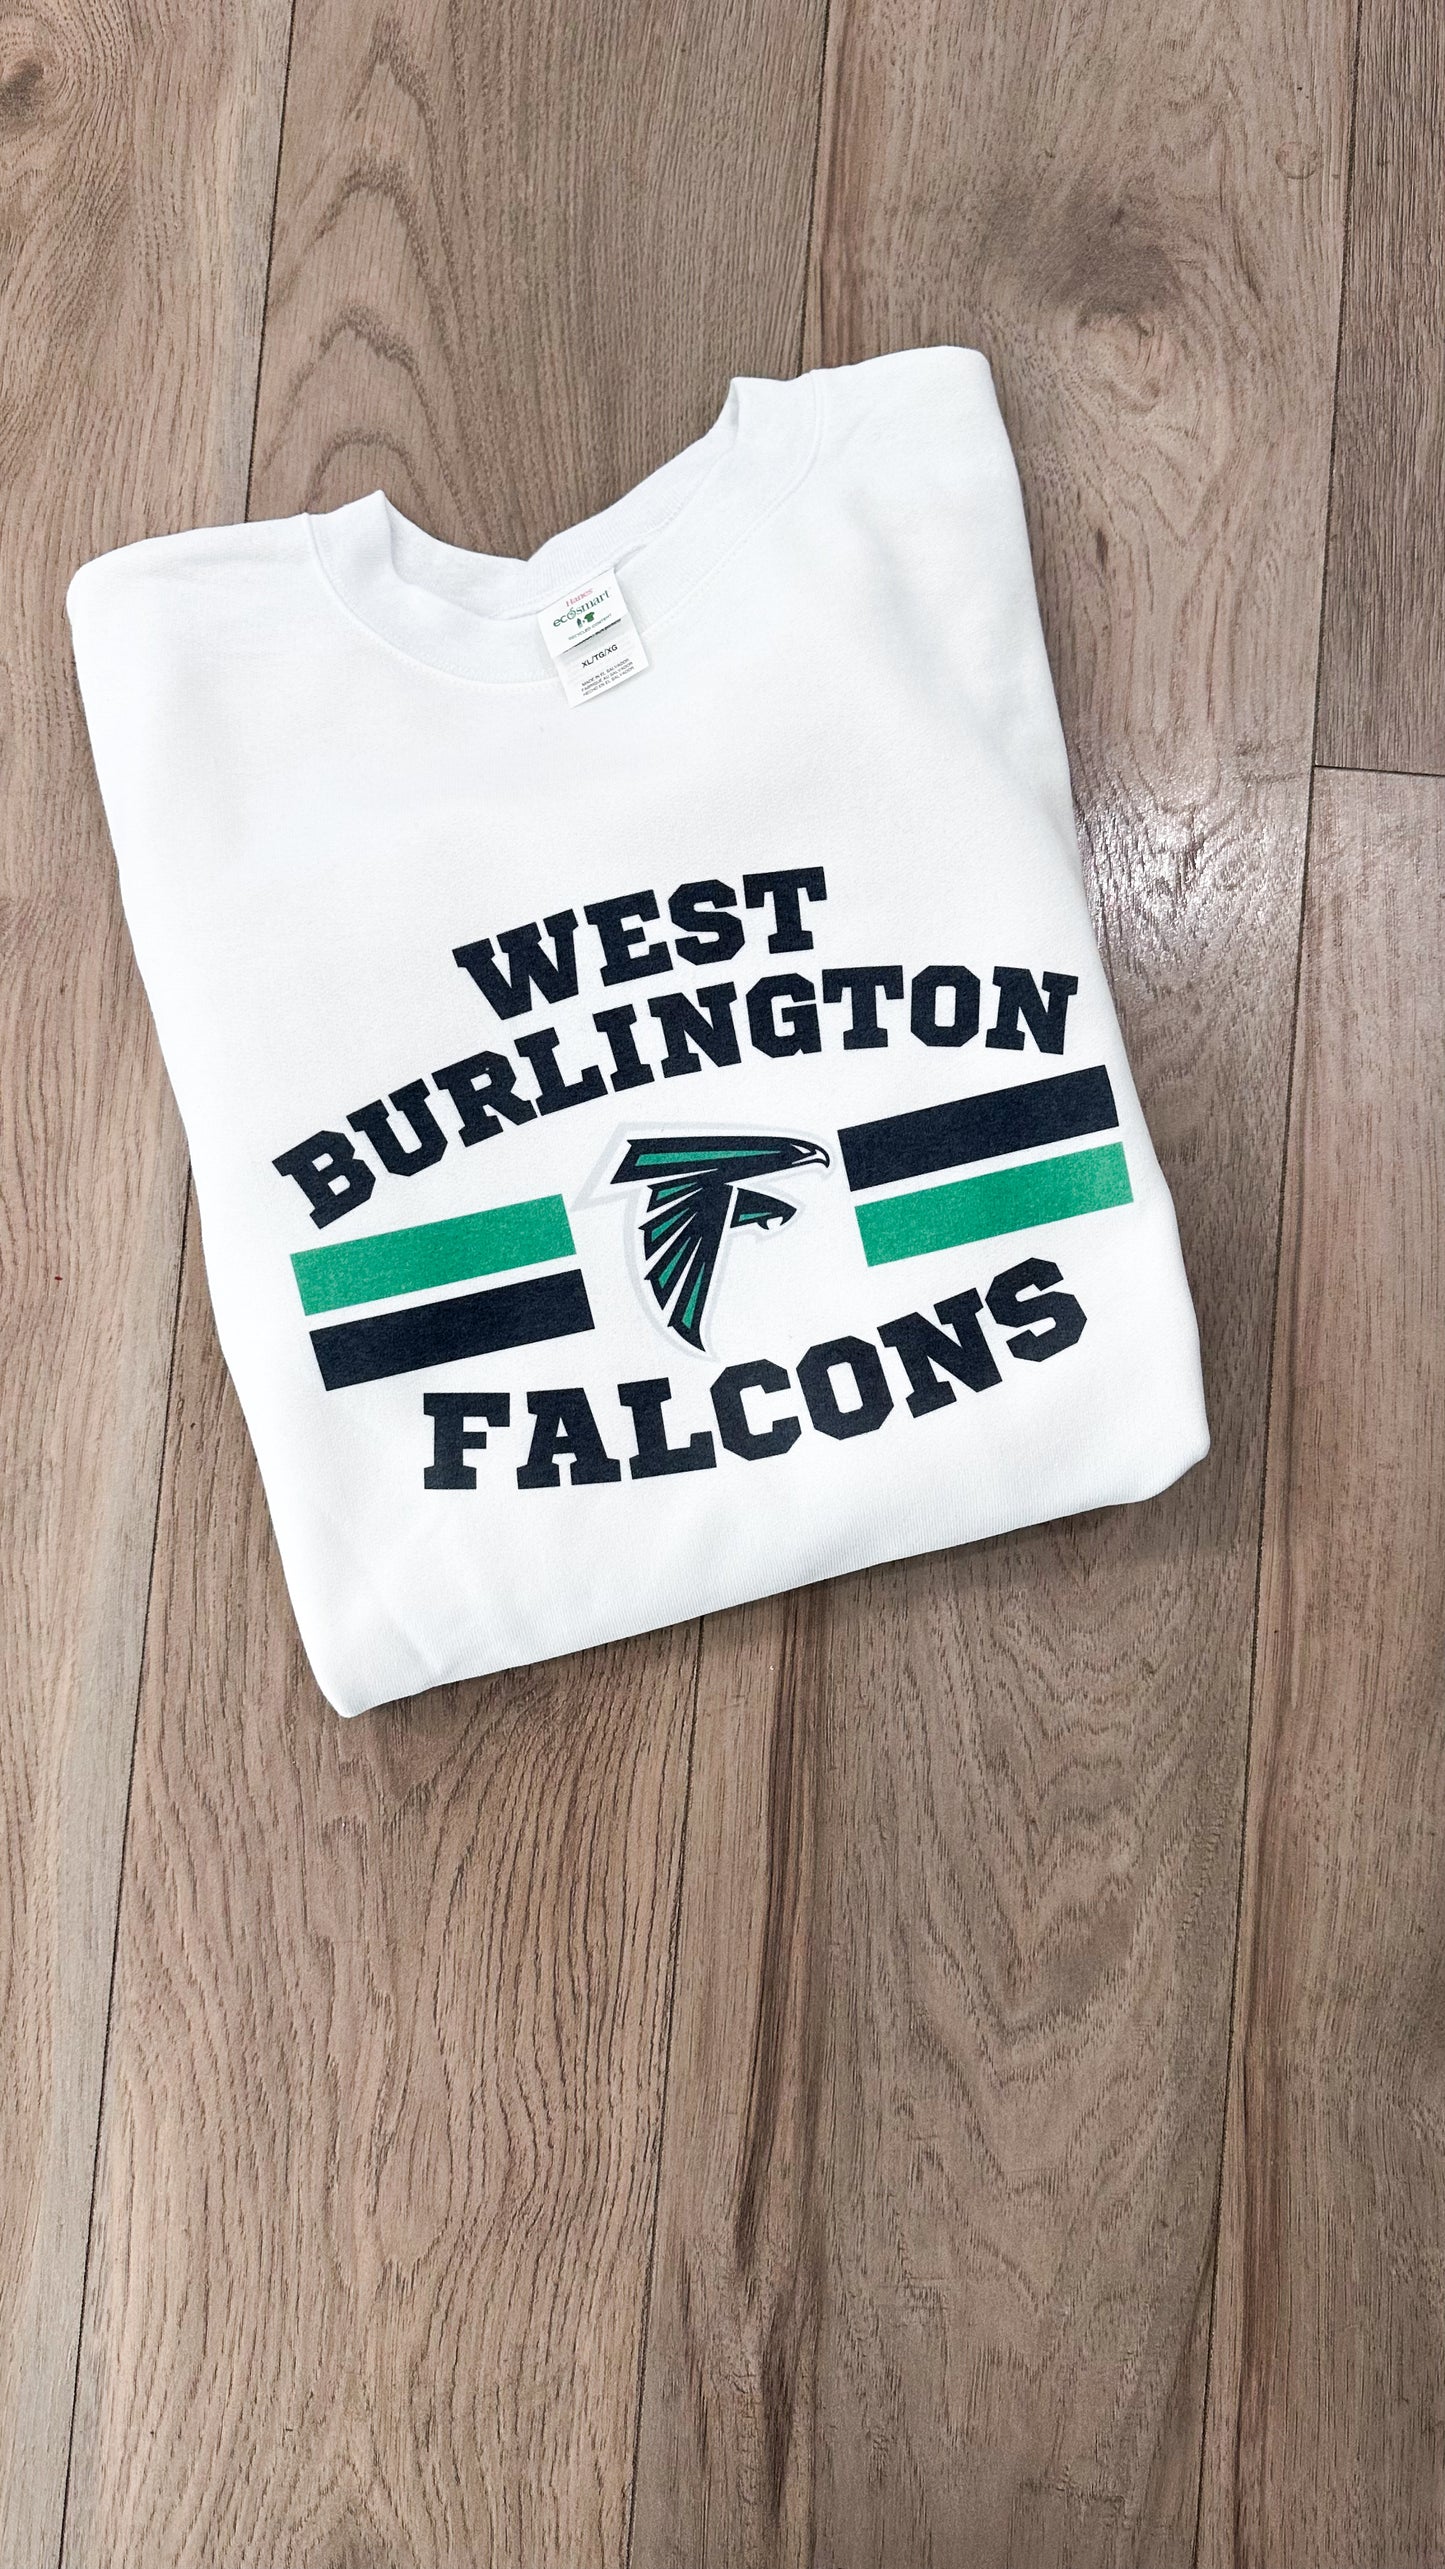 West Burlington Falcons Graphic